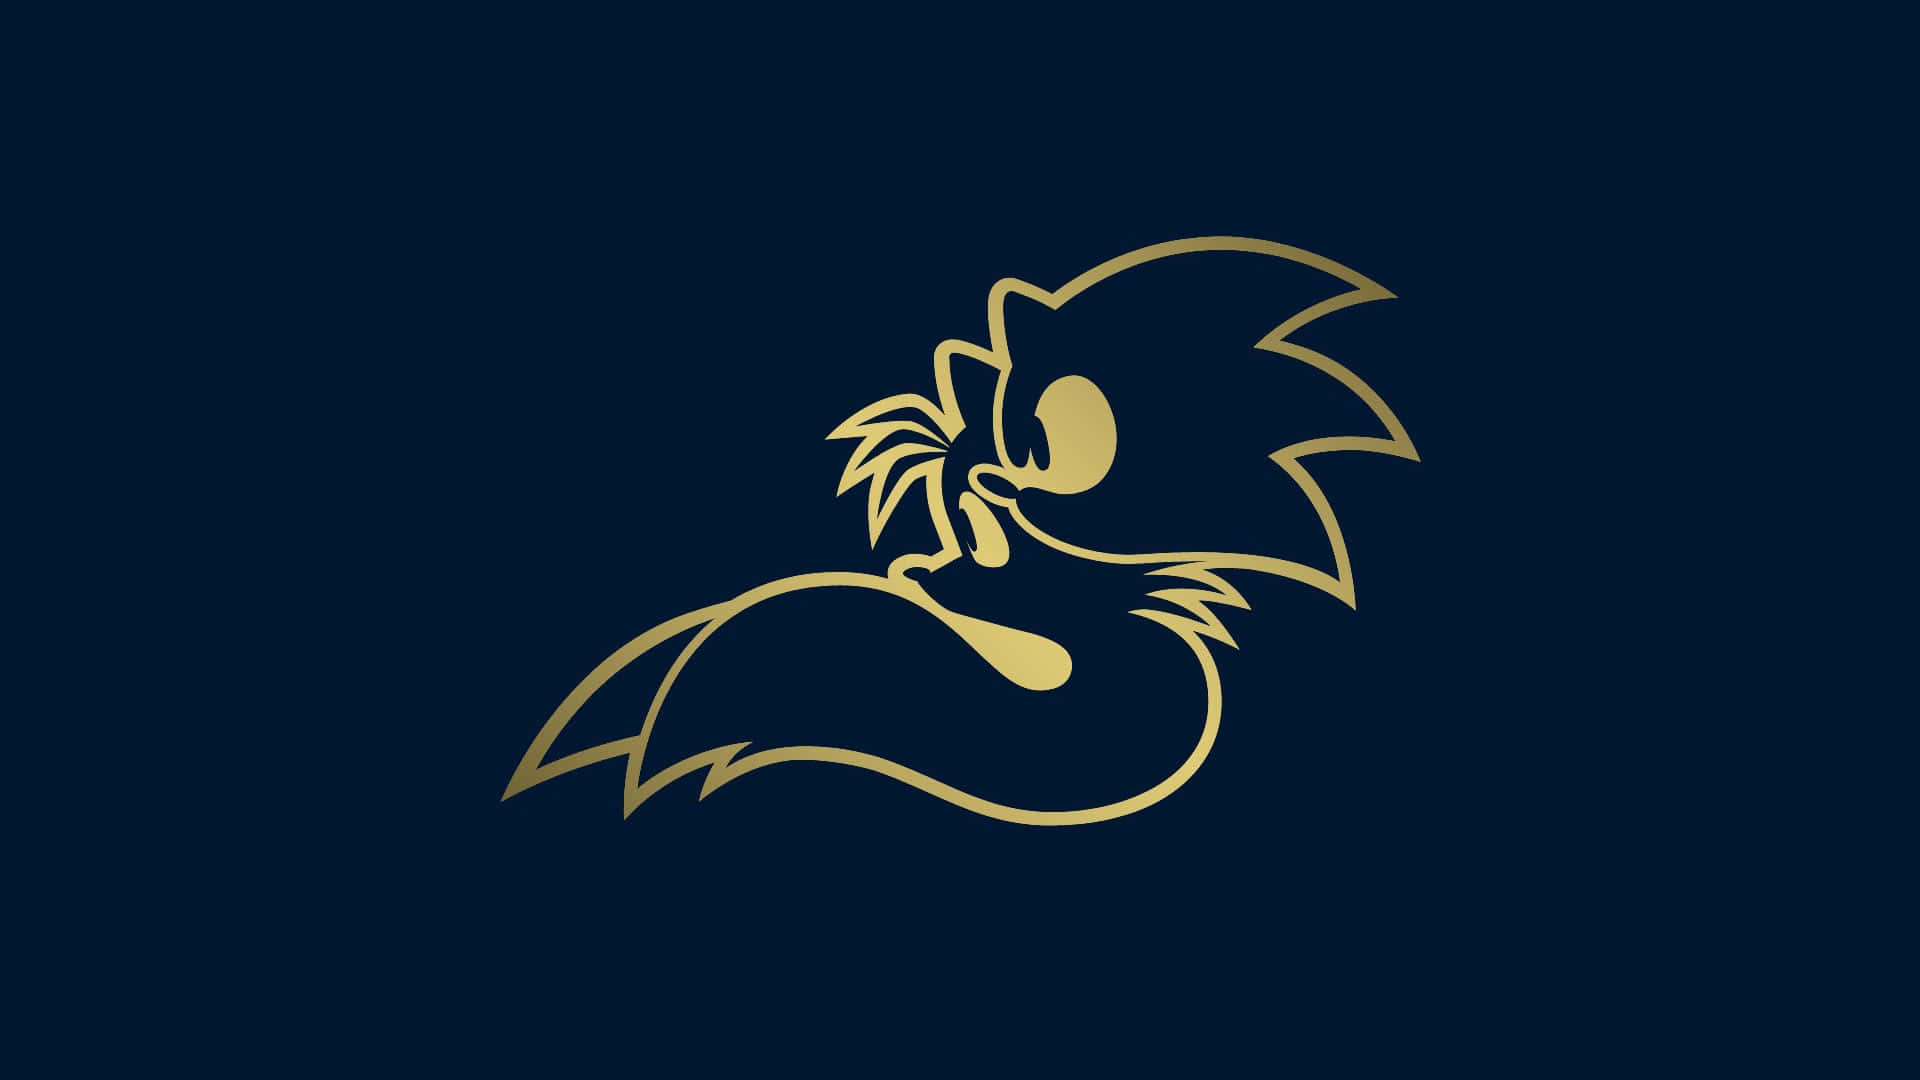 Sonicthe Hedgehog-logo Auf Dunklem Hintergrund Wallpaper